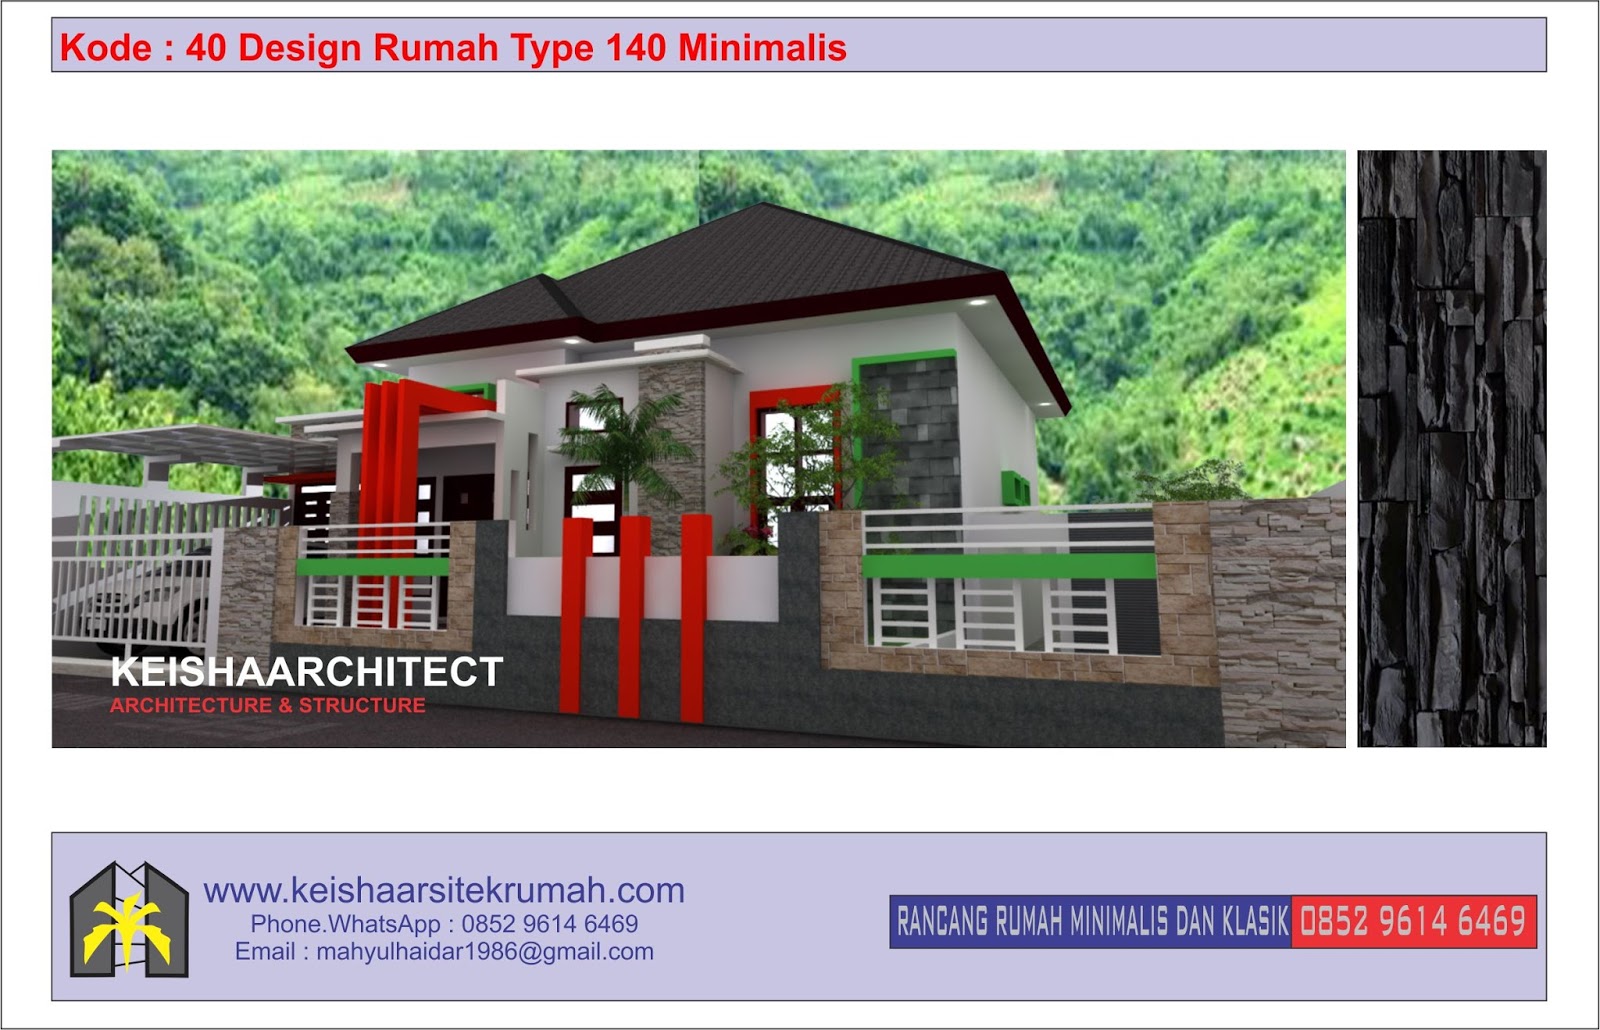 Kode 40 Design Rumah Type 140 Lokasi Banten Prov Banten